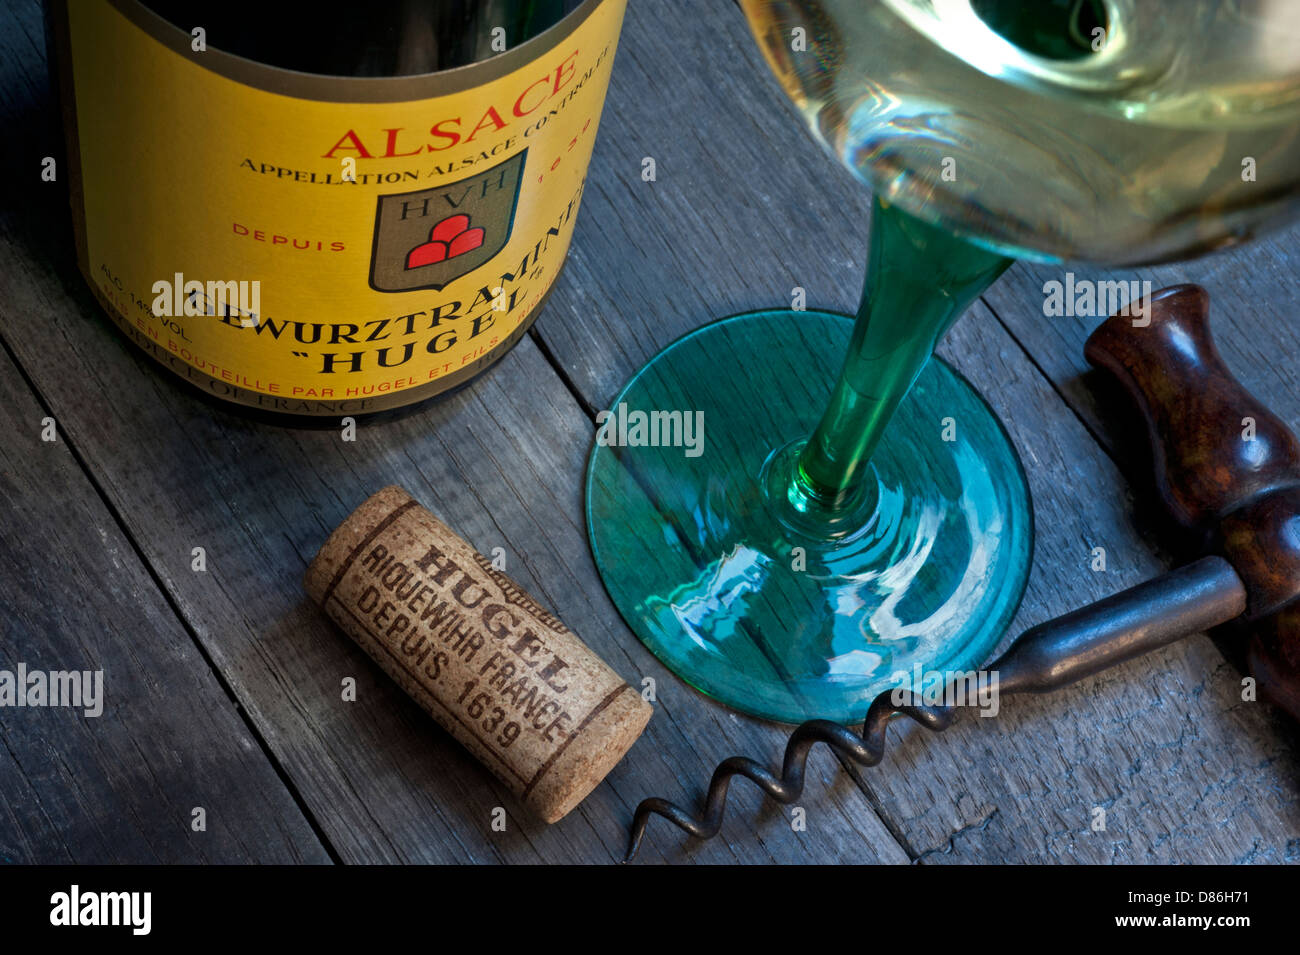 HUGEL Gewurztraminer bouteille de vin blanc verre et liège dans Cellar cave de vinification dégustation de vin situation du producteur renommé 'Hugel' Riquewihr Alsace France Banque D'Images